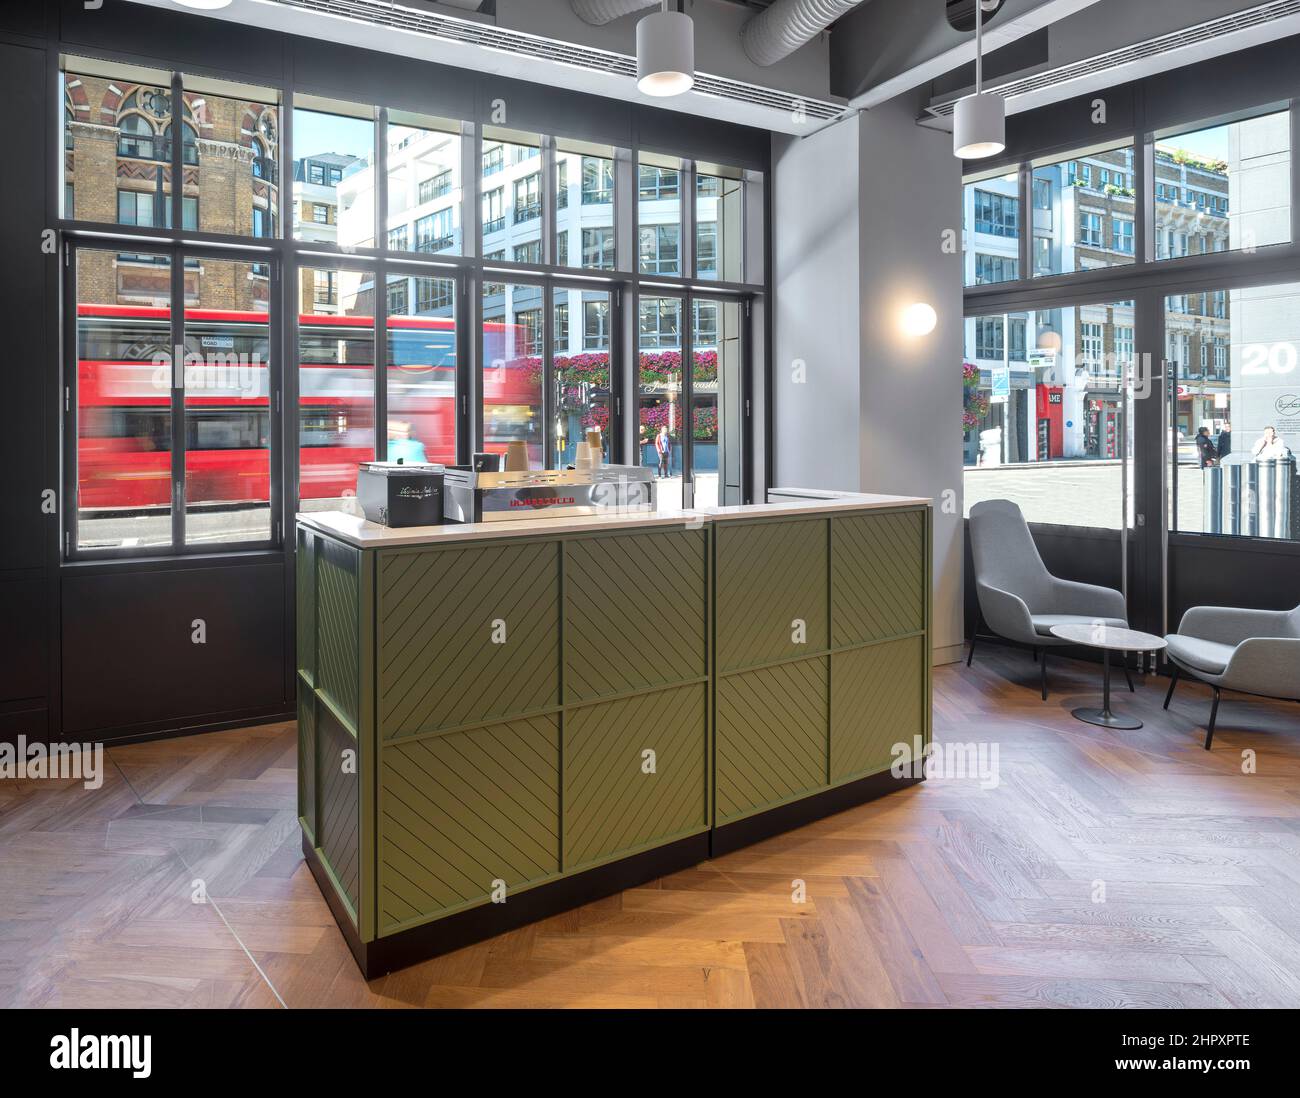 Café-Bar mit Blick auf die Farringdon Road. Bloom Clerkenwell, London, Vereinigtes Königreich. Architekt: John Robertson Architects, 2021. Stockfoto